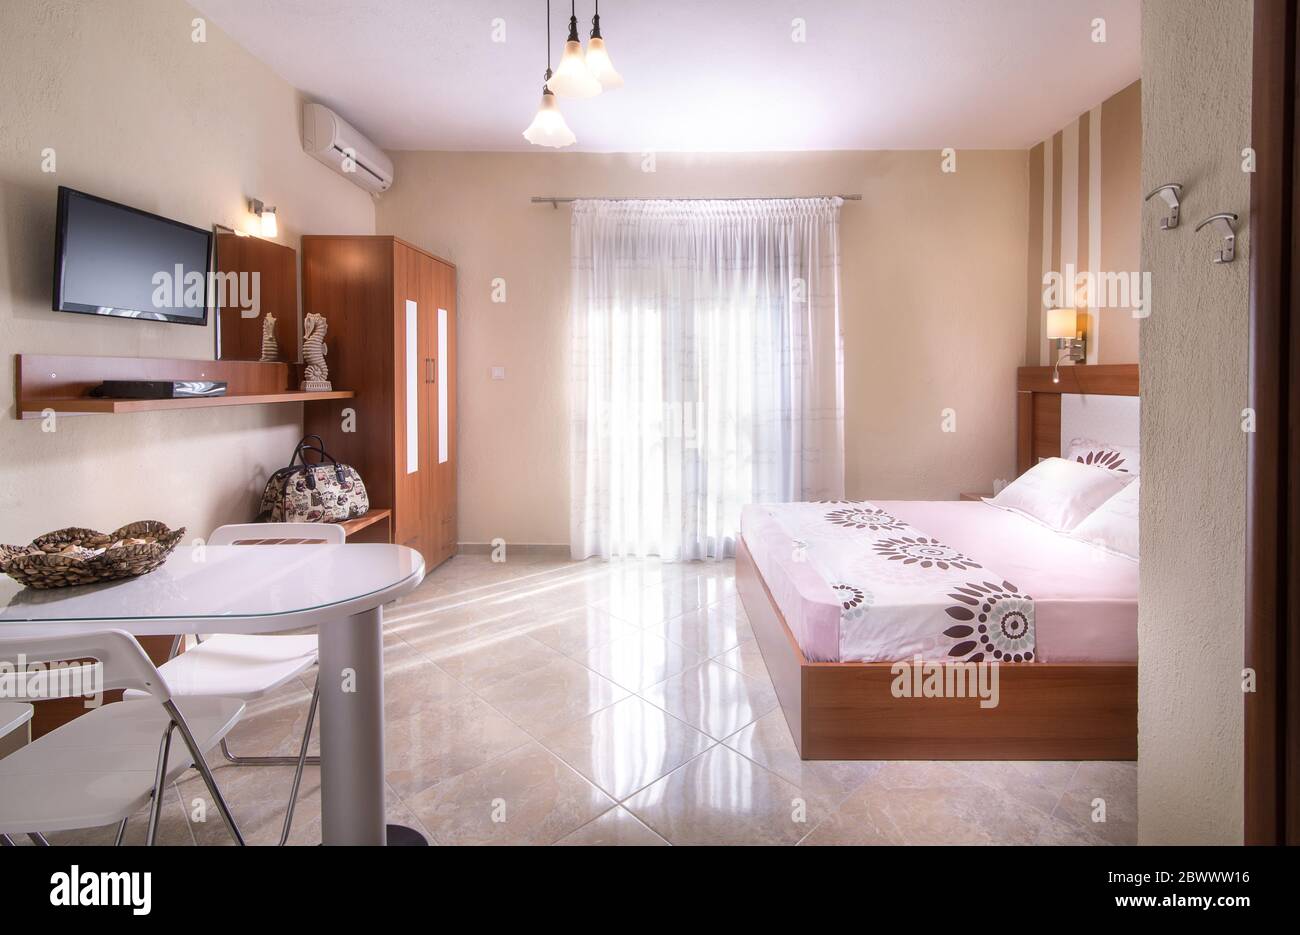 Interni in stile romantico di semplici camere da letto dal design moderno con mobili in legno in bianco e beige Foto Stock